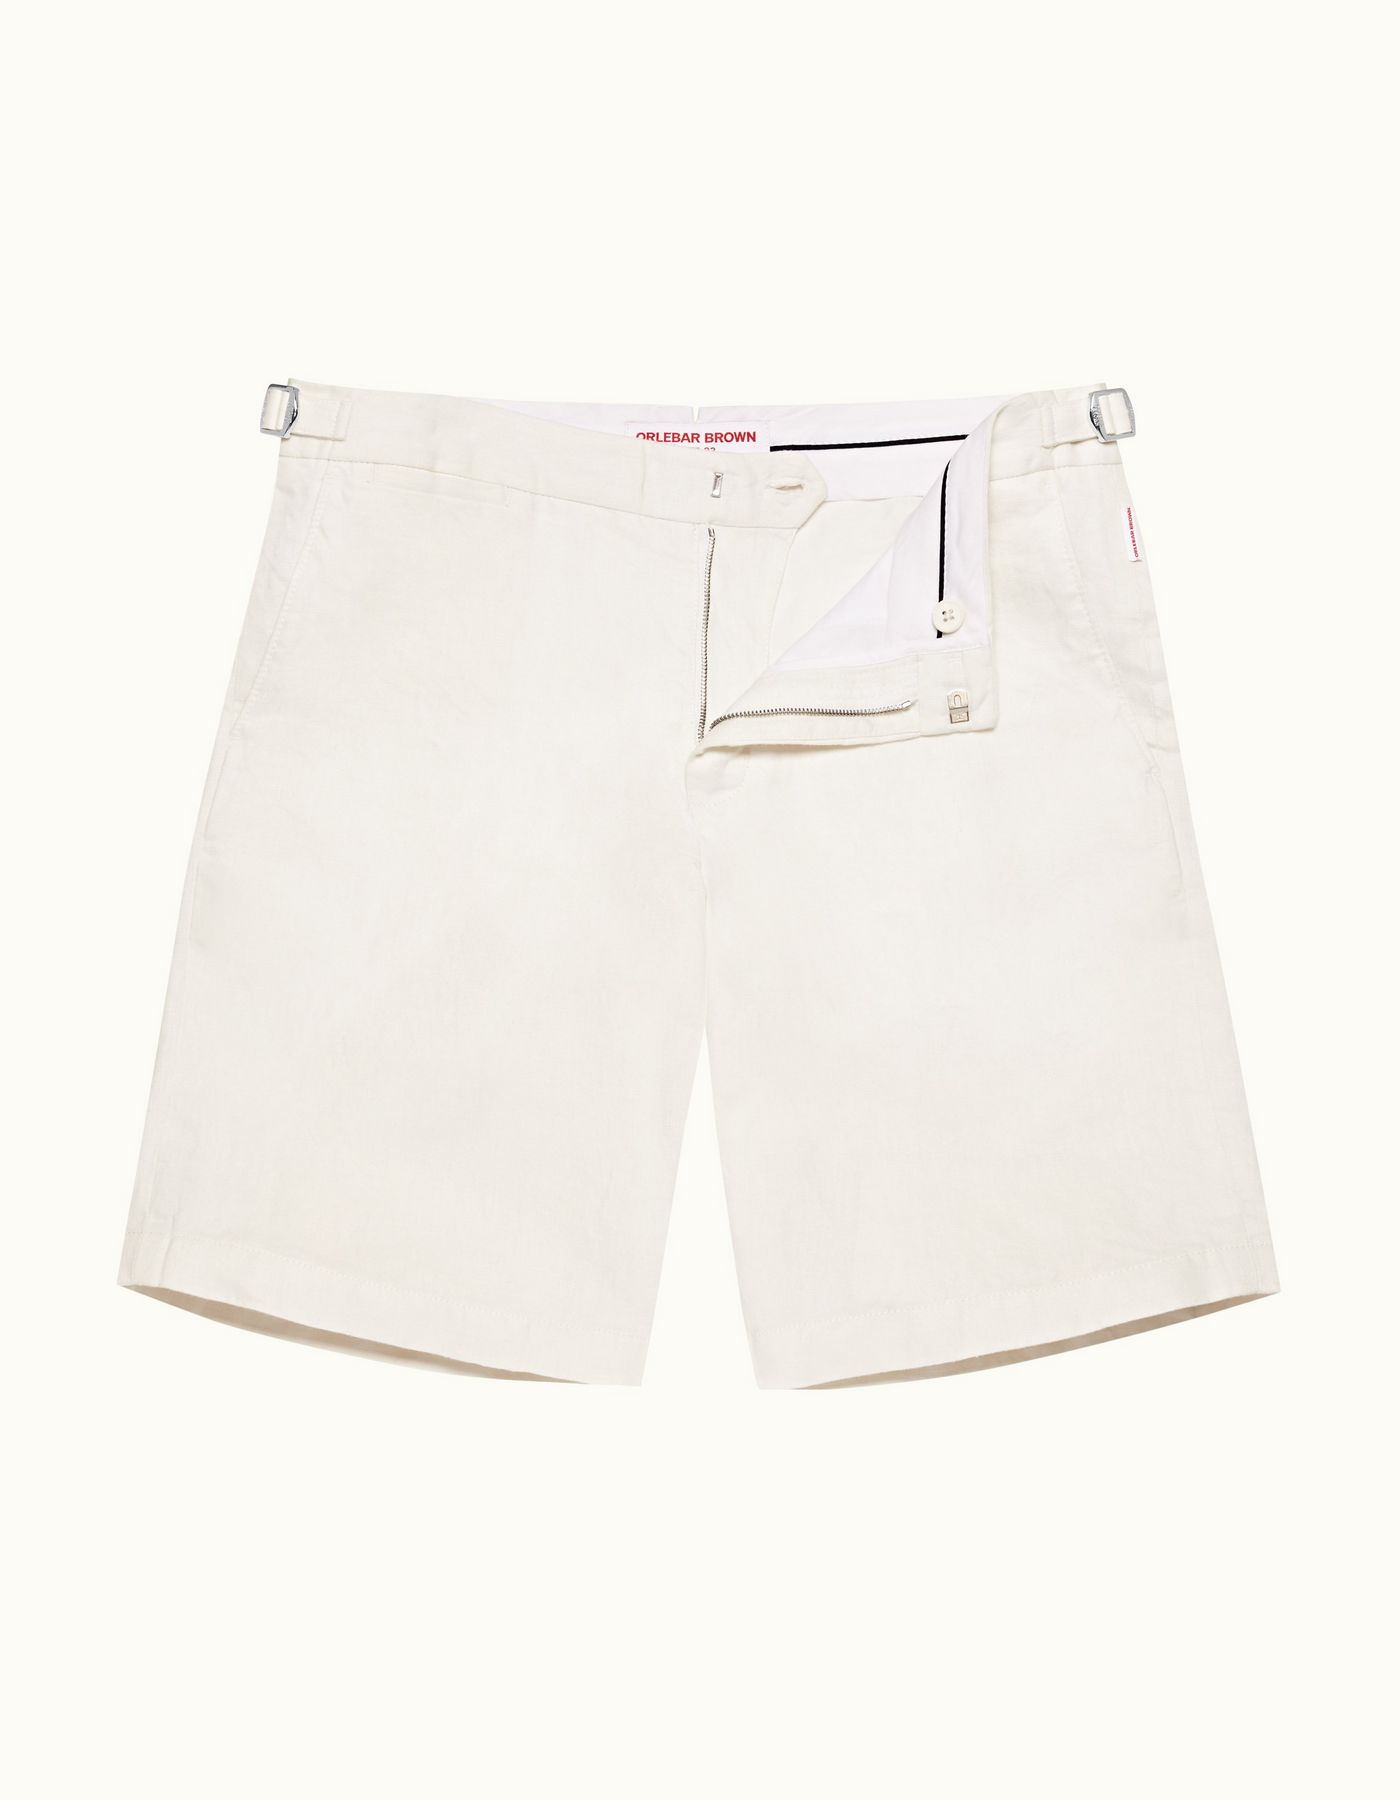 Norwich Linen - Mens Sandbar Tailored Fit Linen Shorts